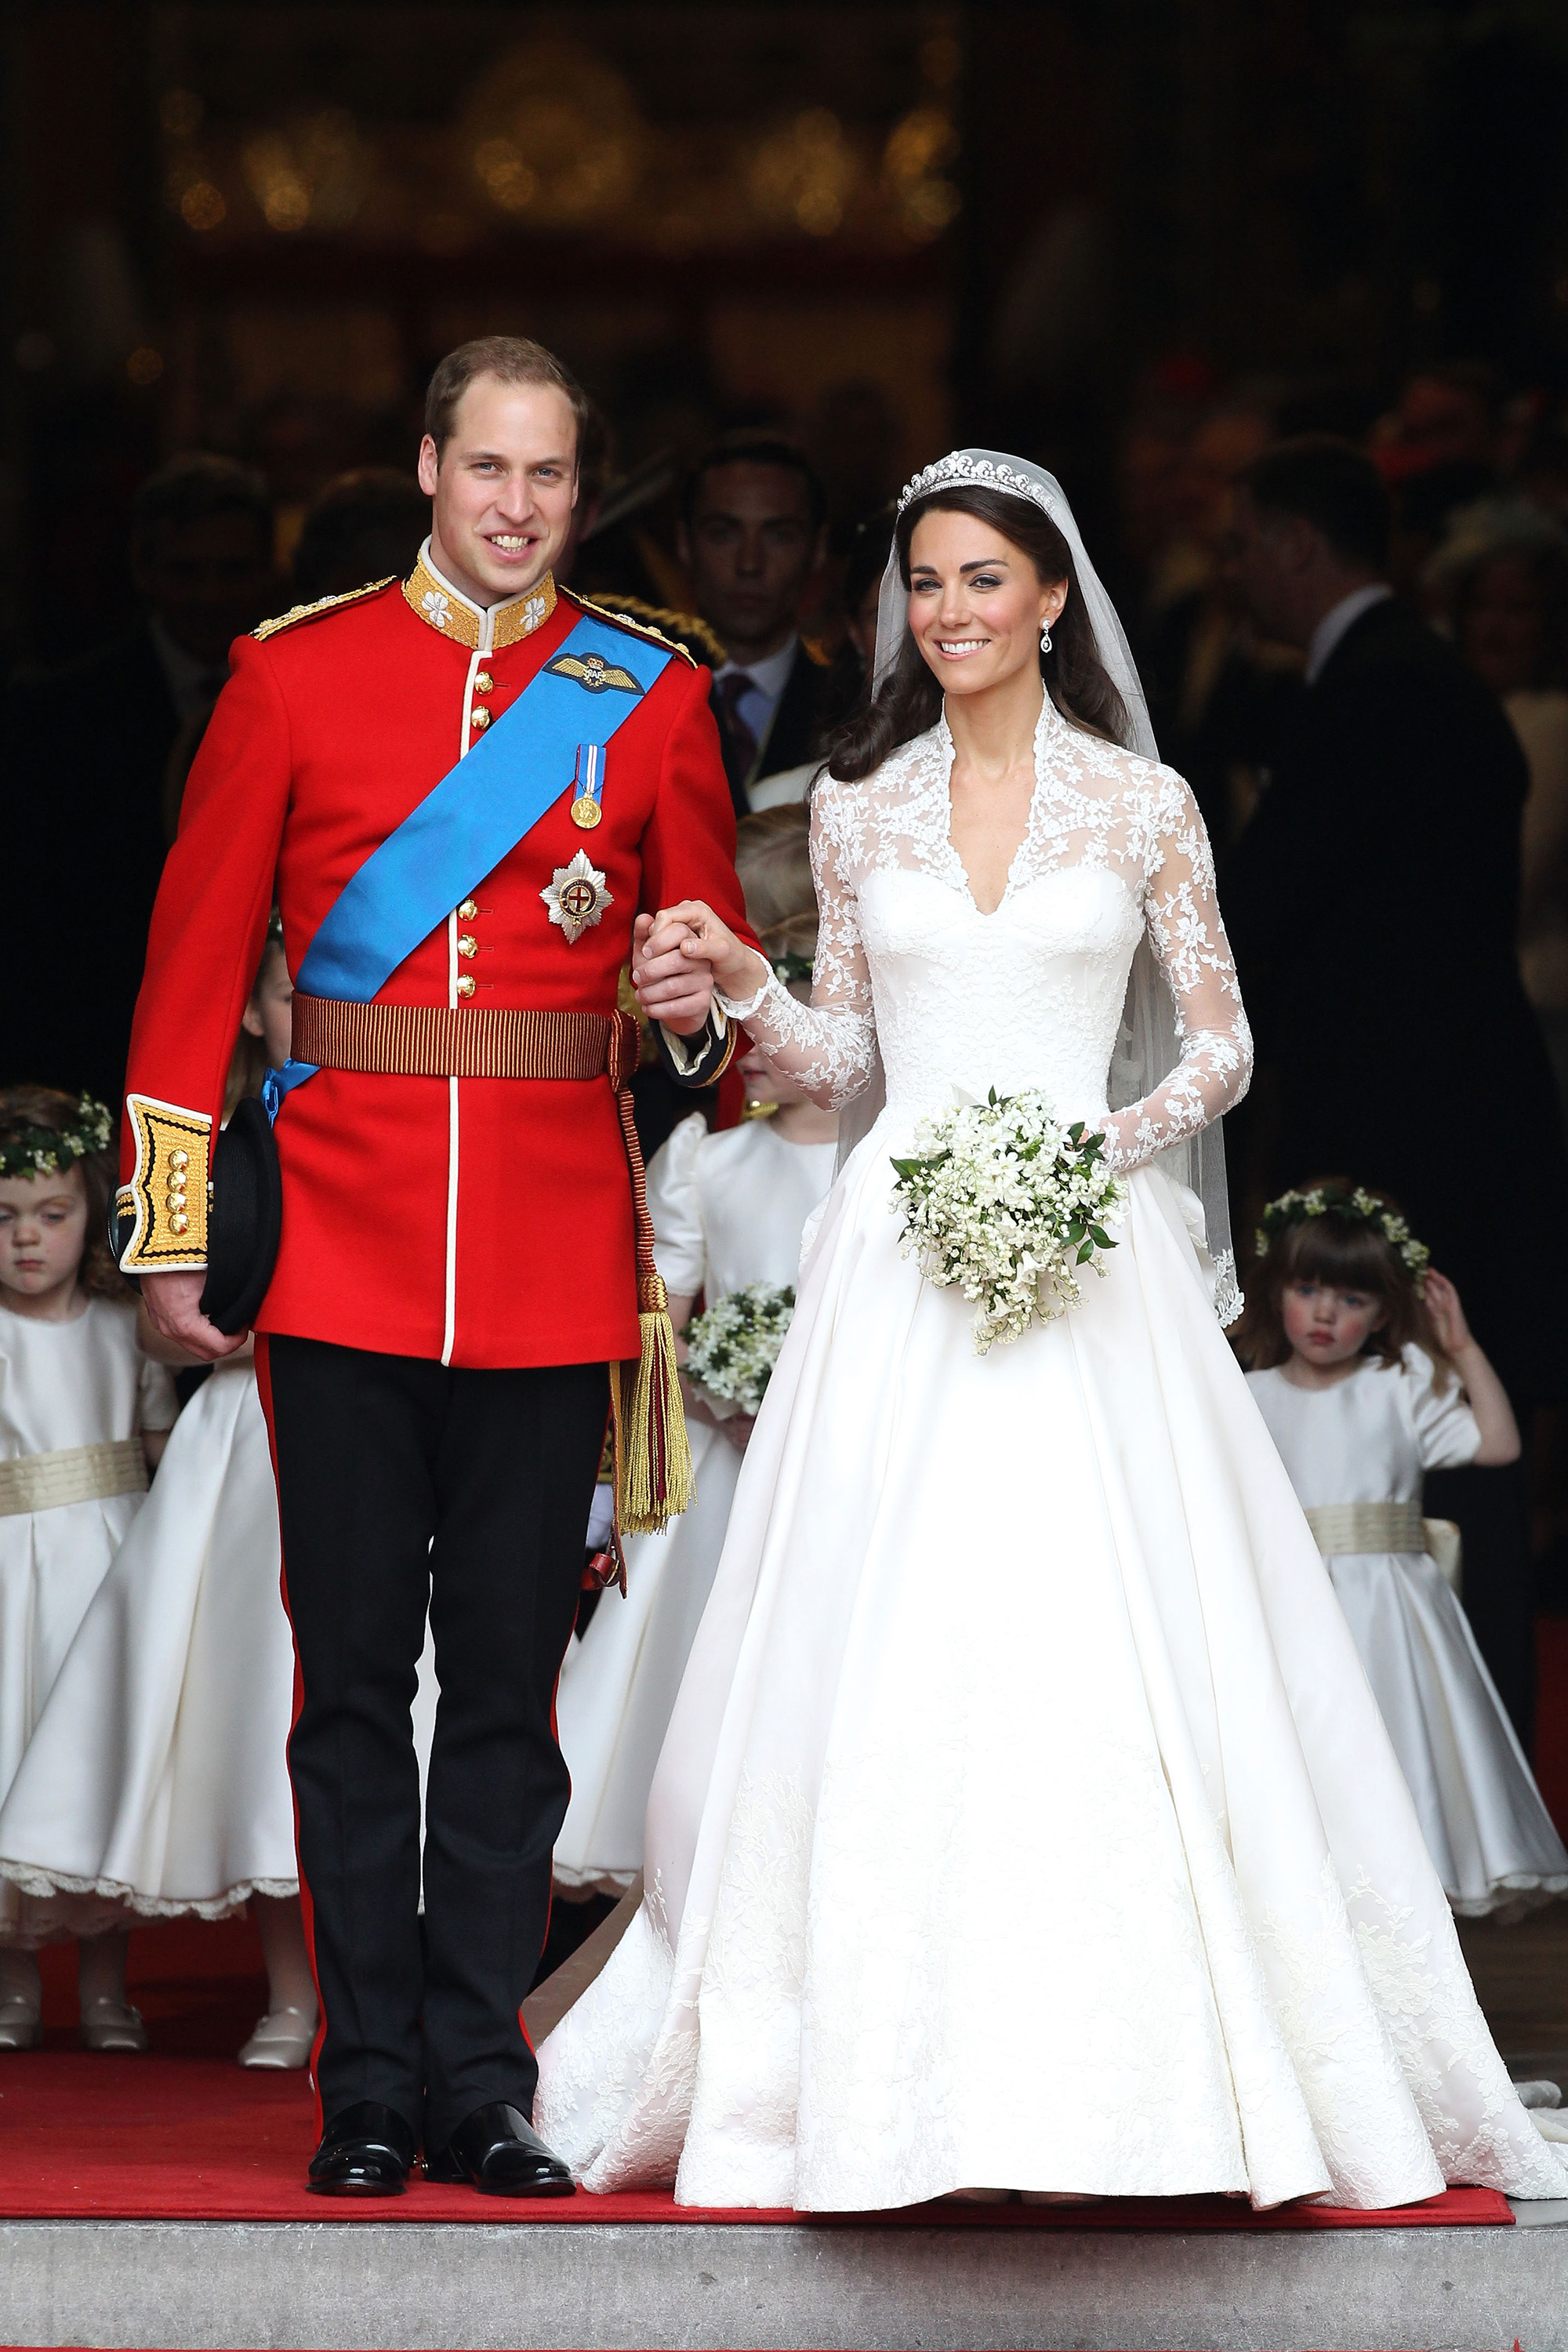 LONDON, ANGLIA - ÁPRILIS 29.: TRH Vilmos herceg, Cambridge hercege és Katalin, Cambridge hercegnője mosolyog a westminsteri apátságban 29. április 2011-én, Londonban, Angliában. A brit trón második felének házasságát Canterbury érseke vezette, és 1900 vendég vett részt, köztük külföldi királyi családtagok és államfők. Jókívánságok ezrei özönlöttek a világ minden tájáról Londonba, hogy szemtanúi legyenek a királyi esküvő látványának és pompájának. (Fotó: Chris Jackson/Getty Images)